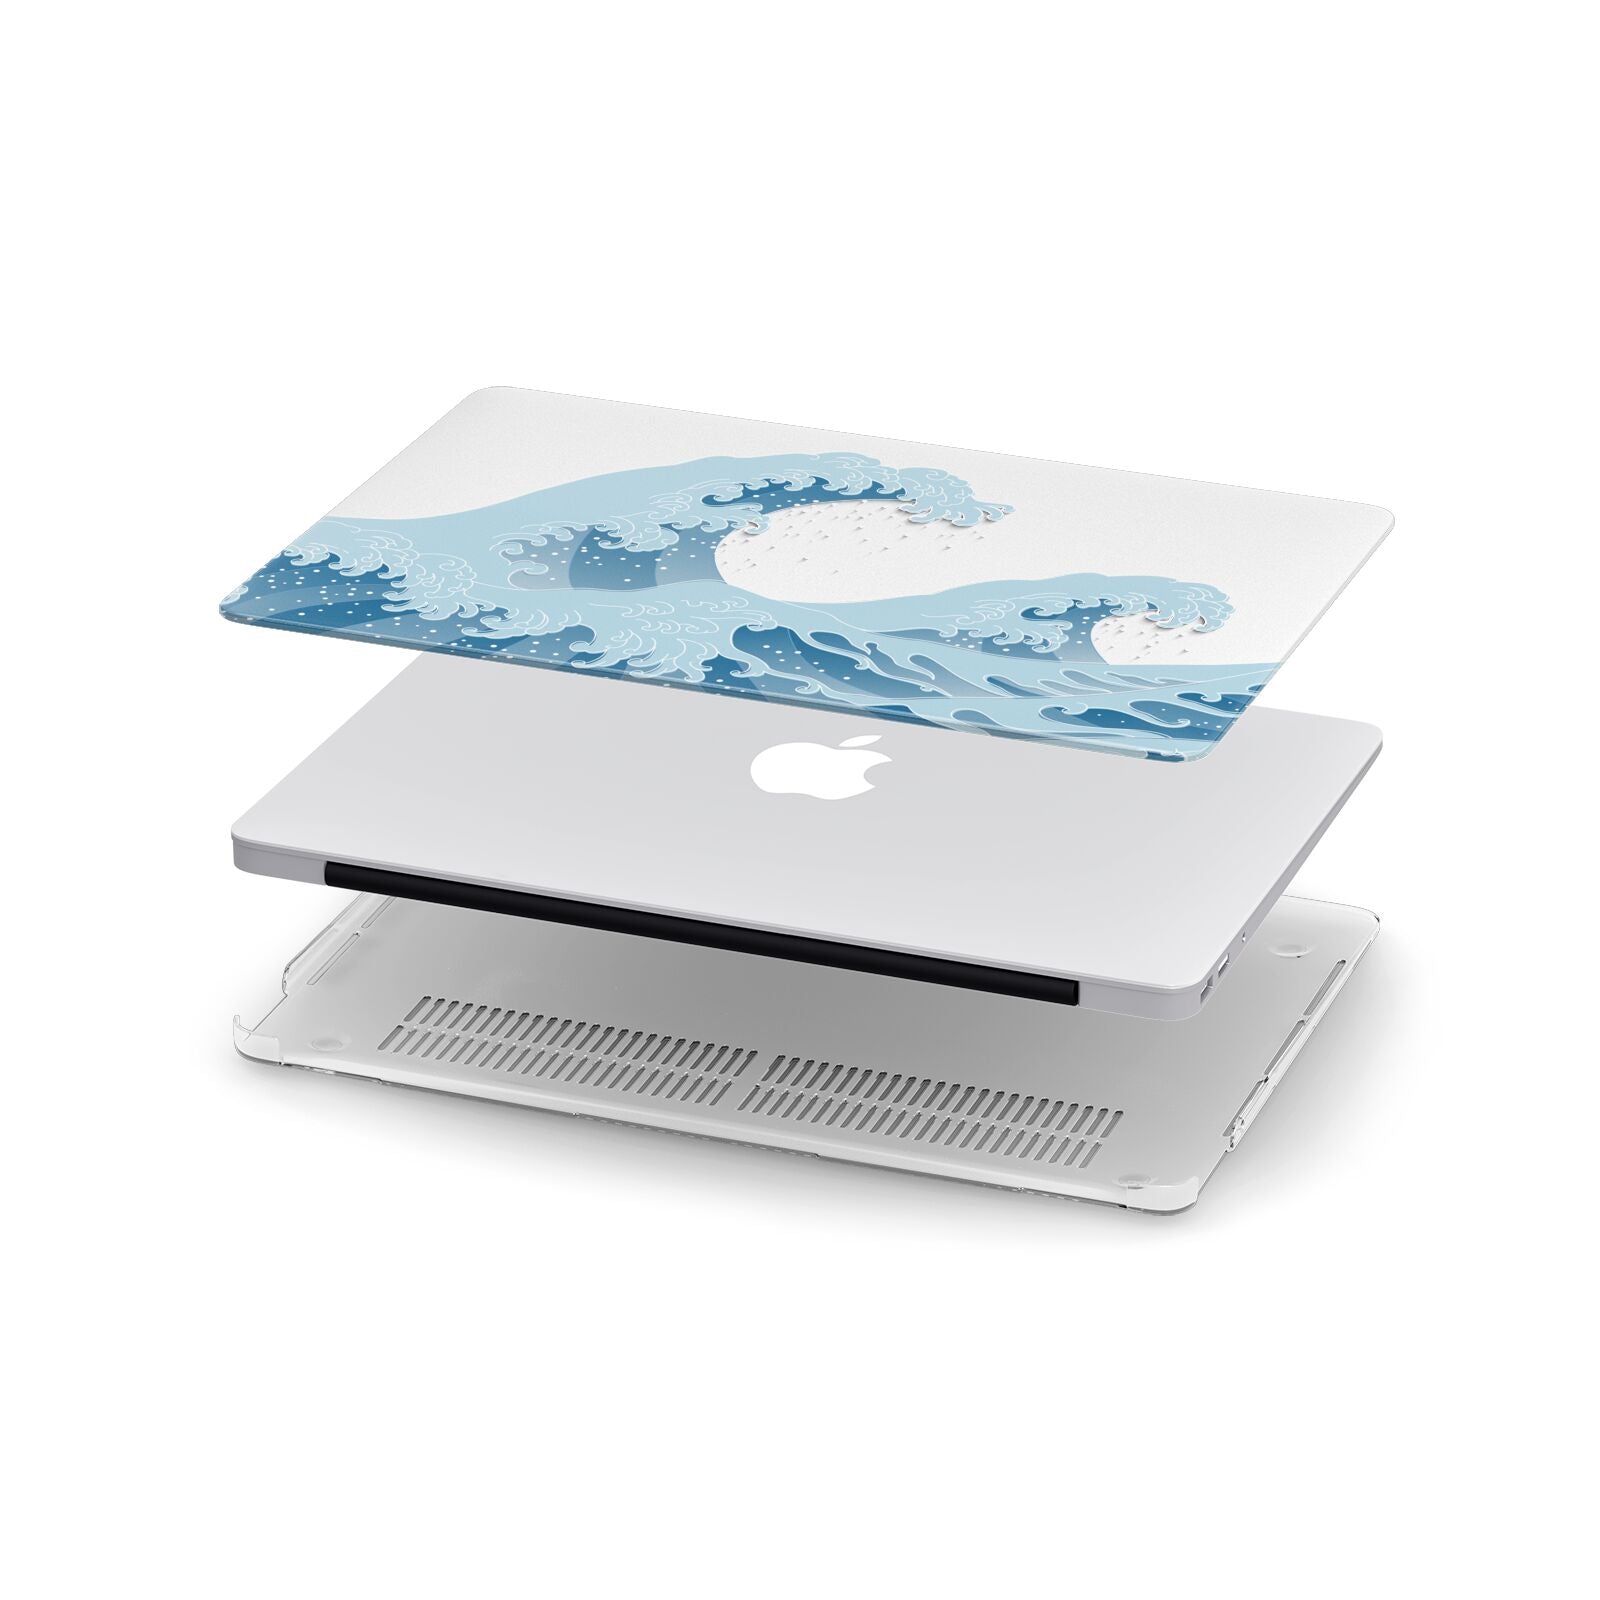 Coque MacBook Pro A1706 / A1989 / A2159, Hokusai, La Grande Vague